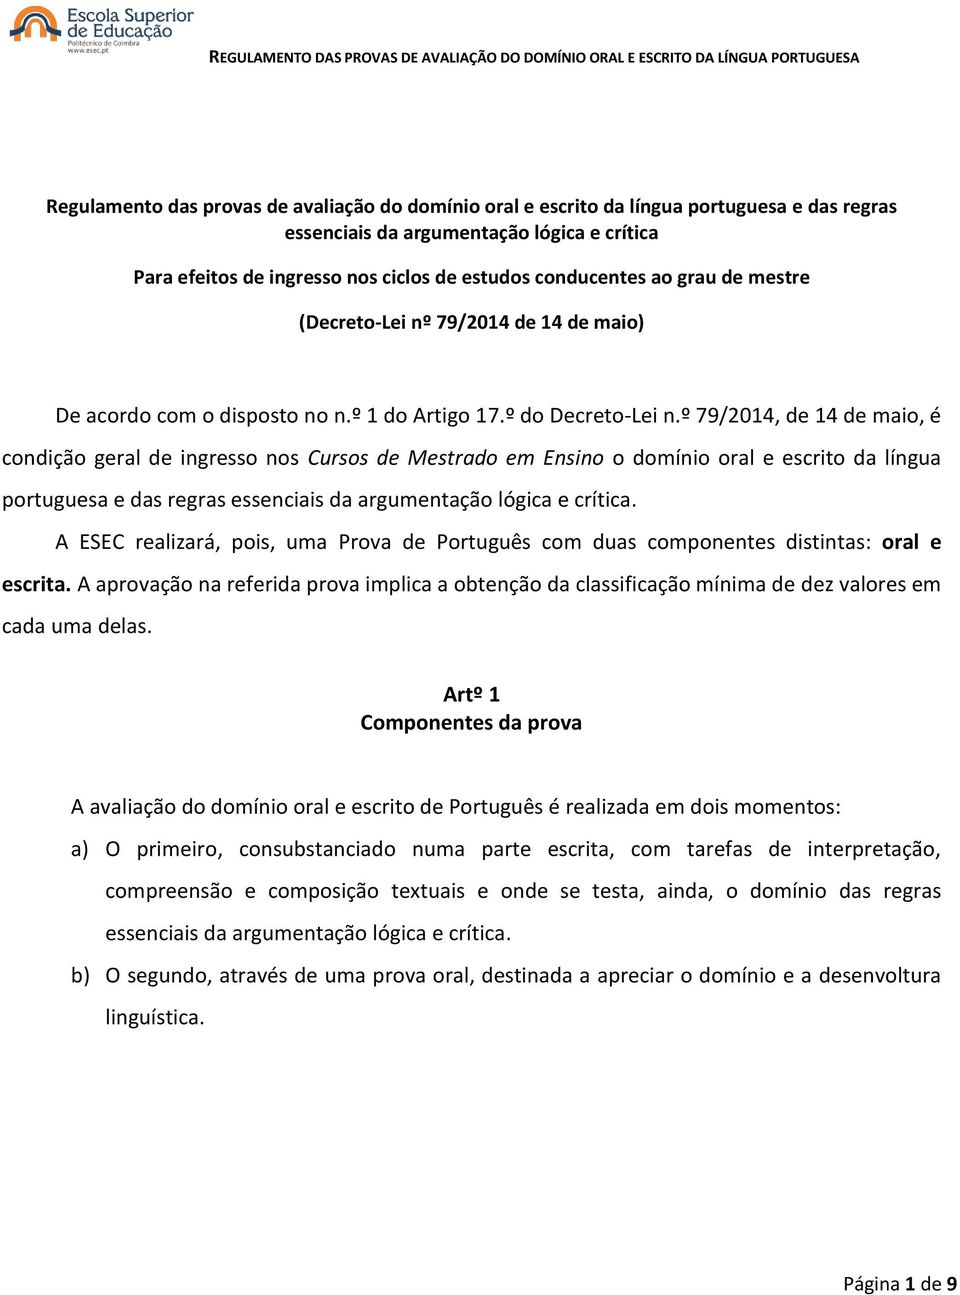 º 79/2014, de 14 de maio, é condição geral de ingresso nos Cursos de Mestrado em Ensino o domínio oral e escrito da língua portuguesa e das regras essenciais da argumentação lógica e crítica.